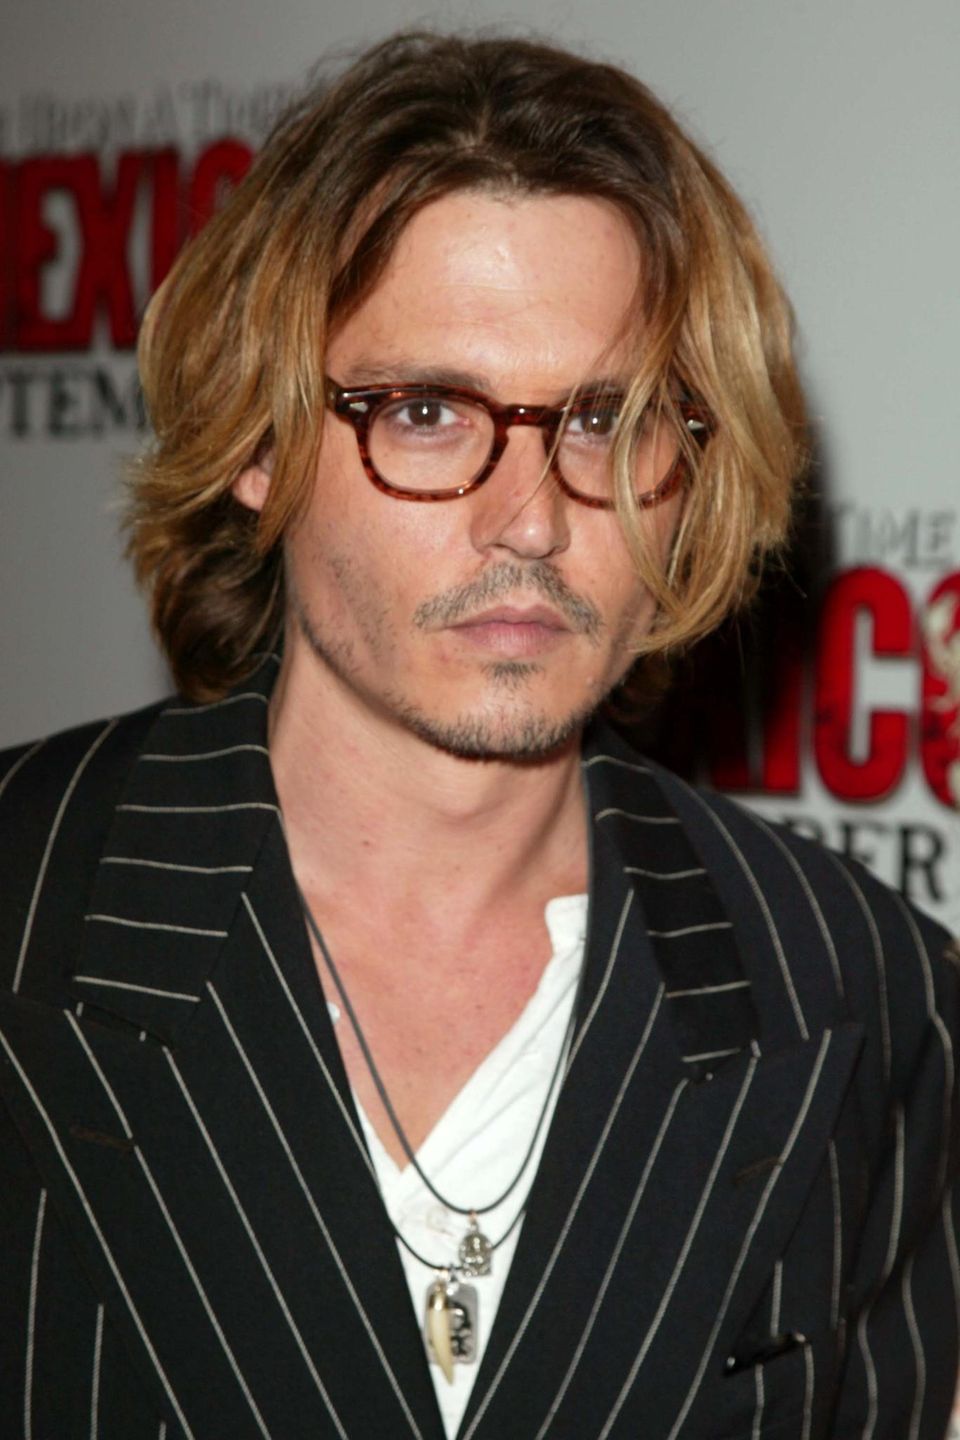 2003  Eine runde Hornbrille zählt ebenfalls zu seinem Signature-Look. Auf der Filmpremiere von "Once Upon a Time in Mexico" trägt er seine Haare etwas kürzer, gestuft und einige Nuancen heller.